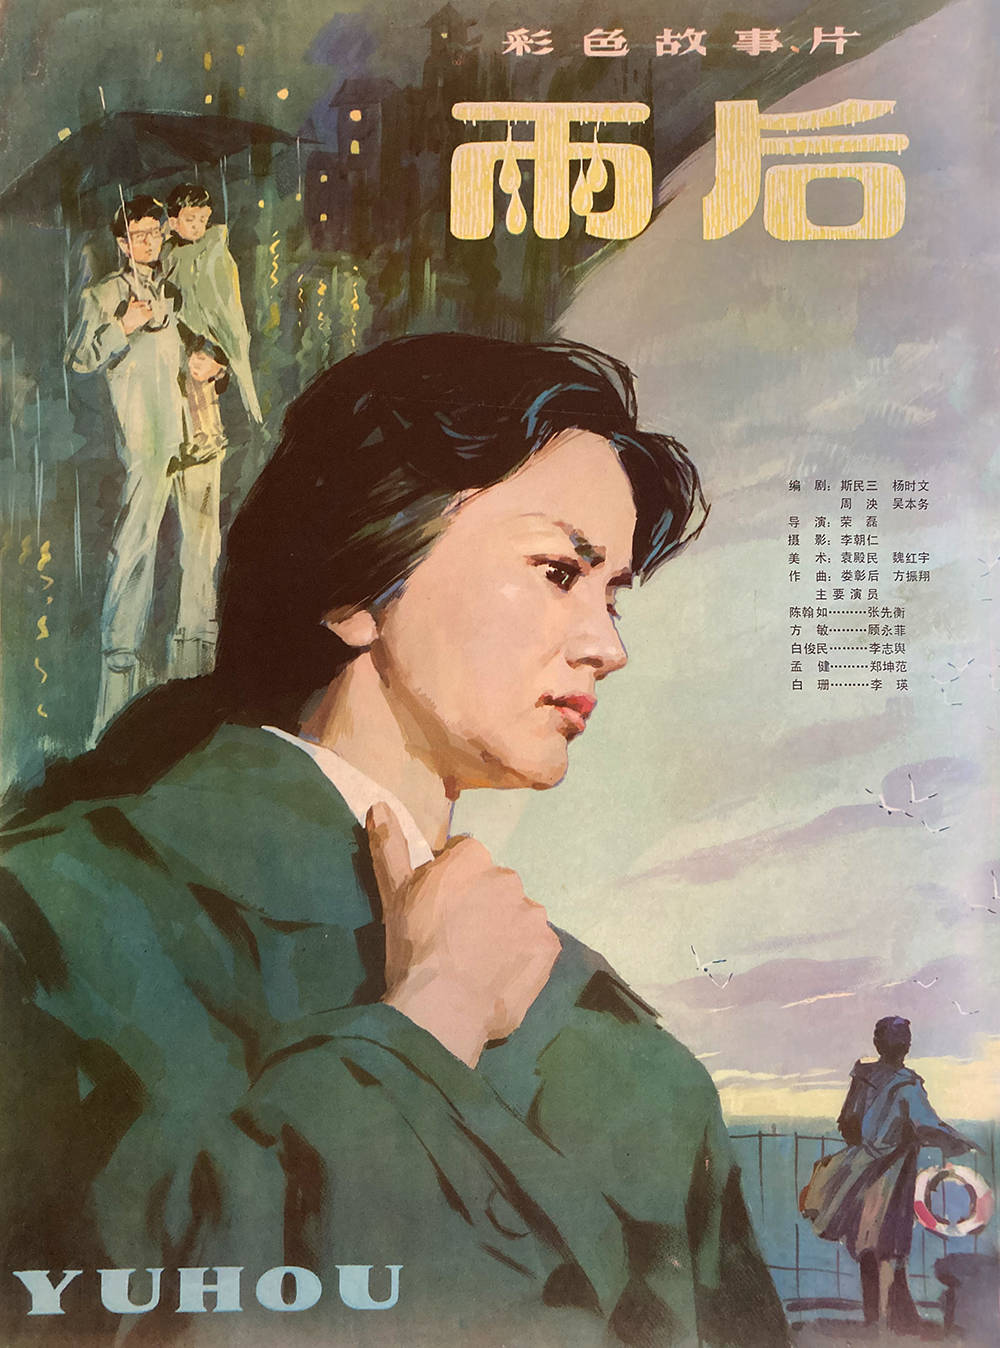 老电影海报:80年代老电影,全部手绘版(一)